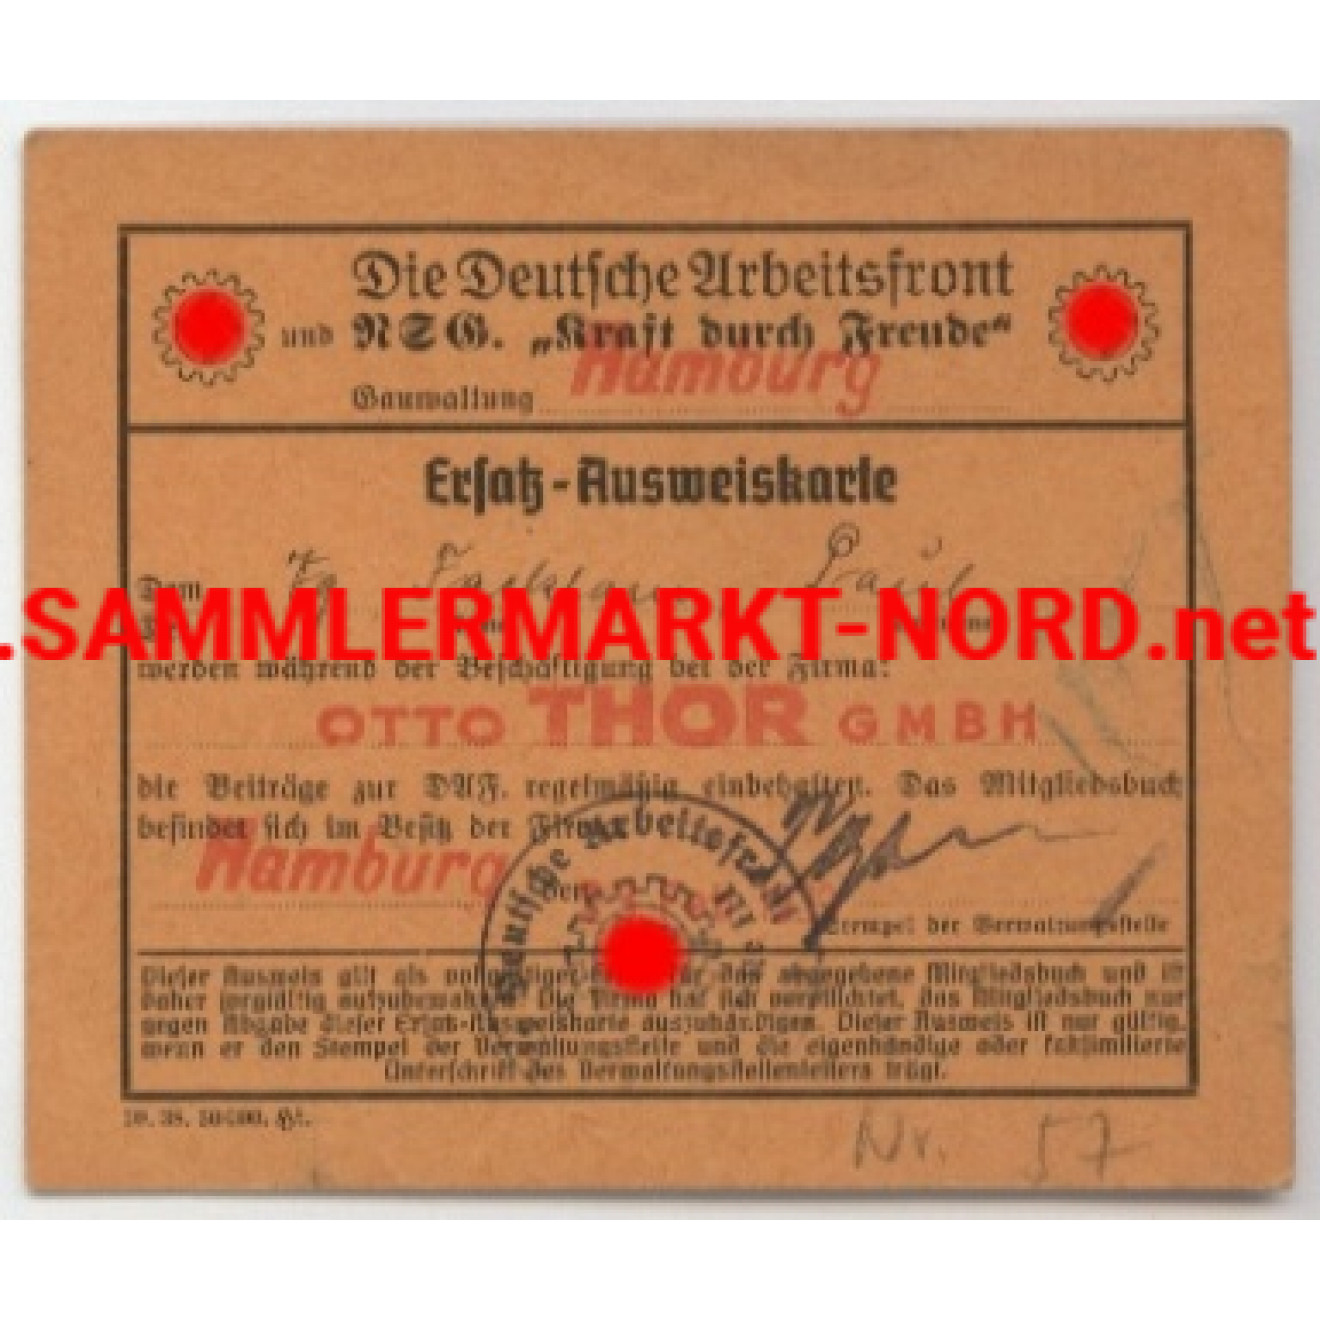 Ersatz Ausweiskarte der deutschen Arbeitsfront